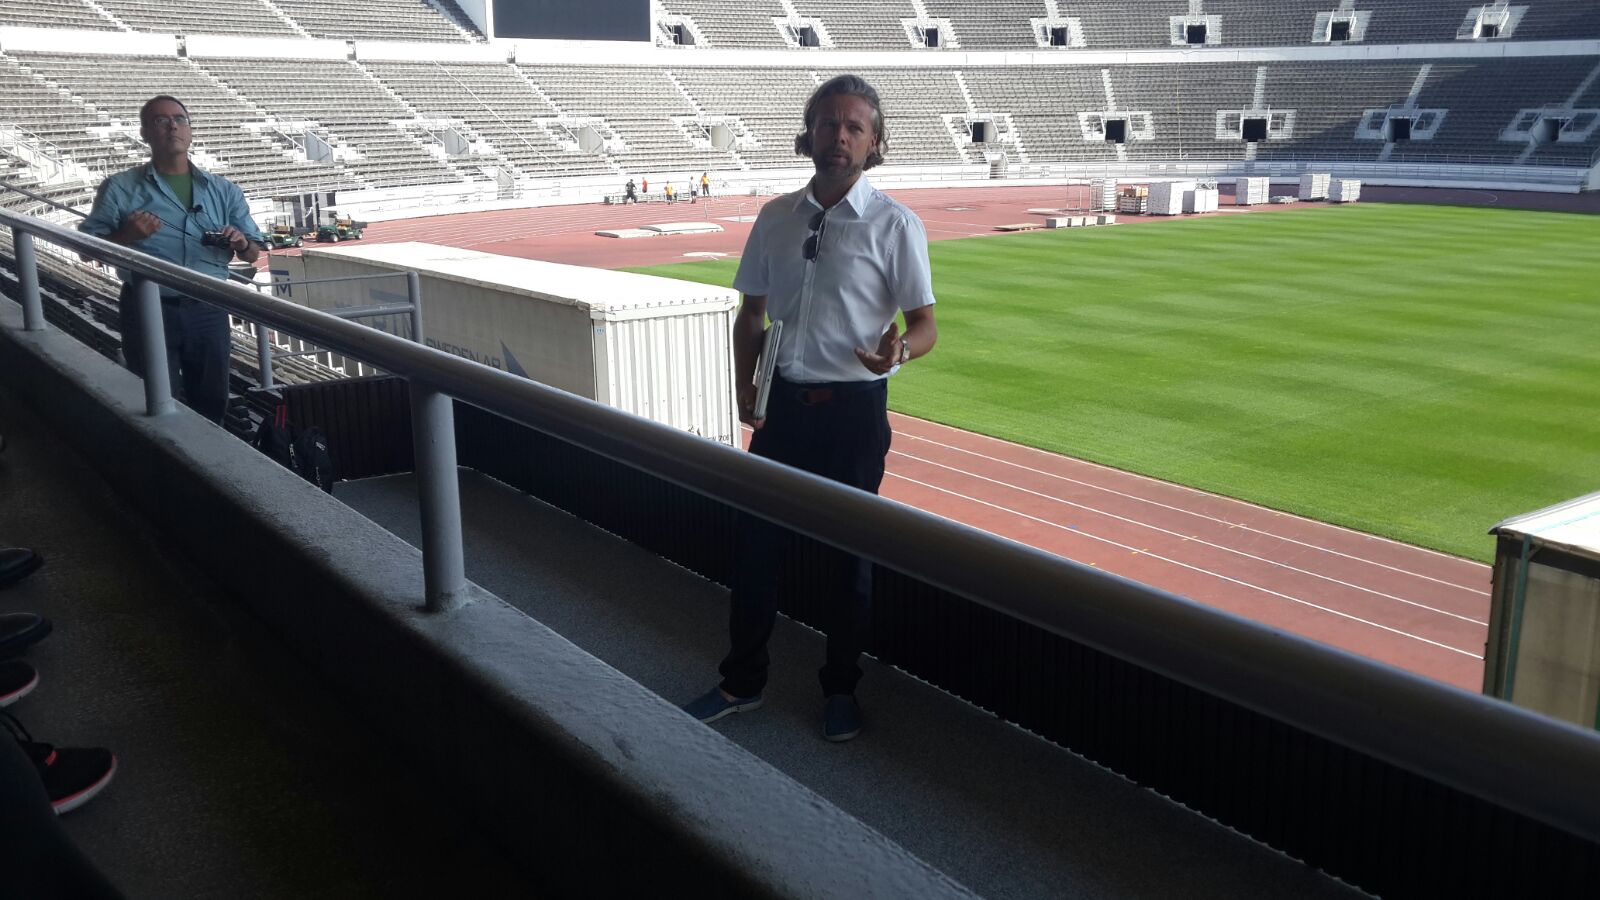 סיור מקצועי בפרויקט חידוש האצטדיון האולימפי